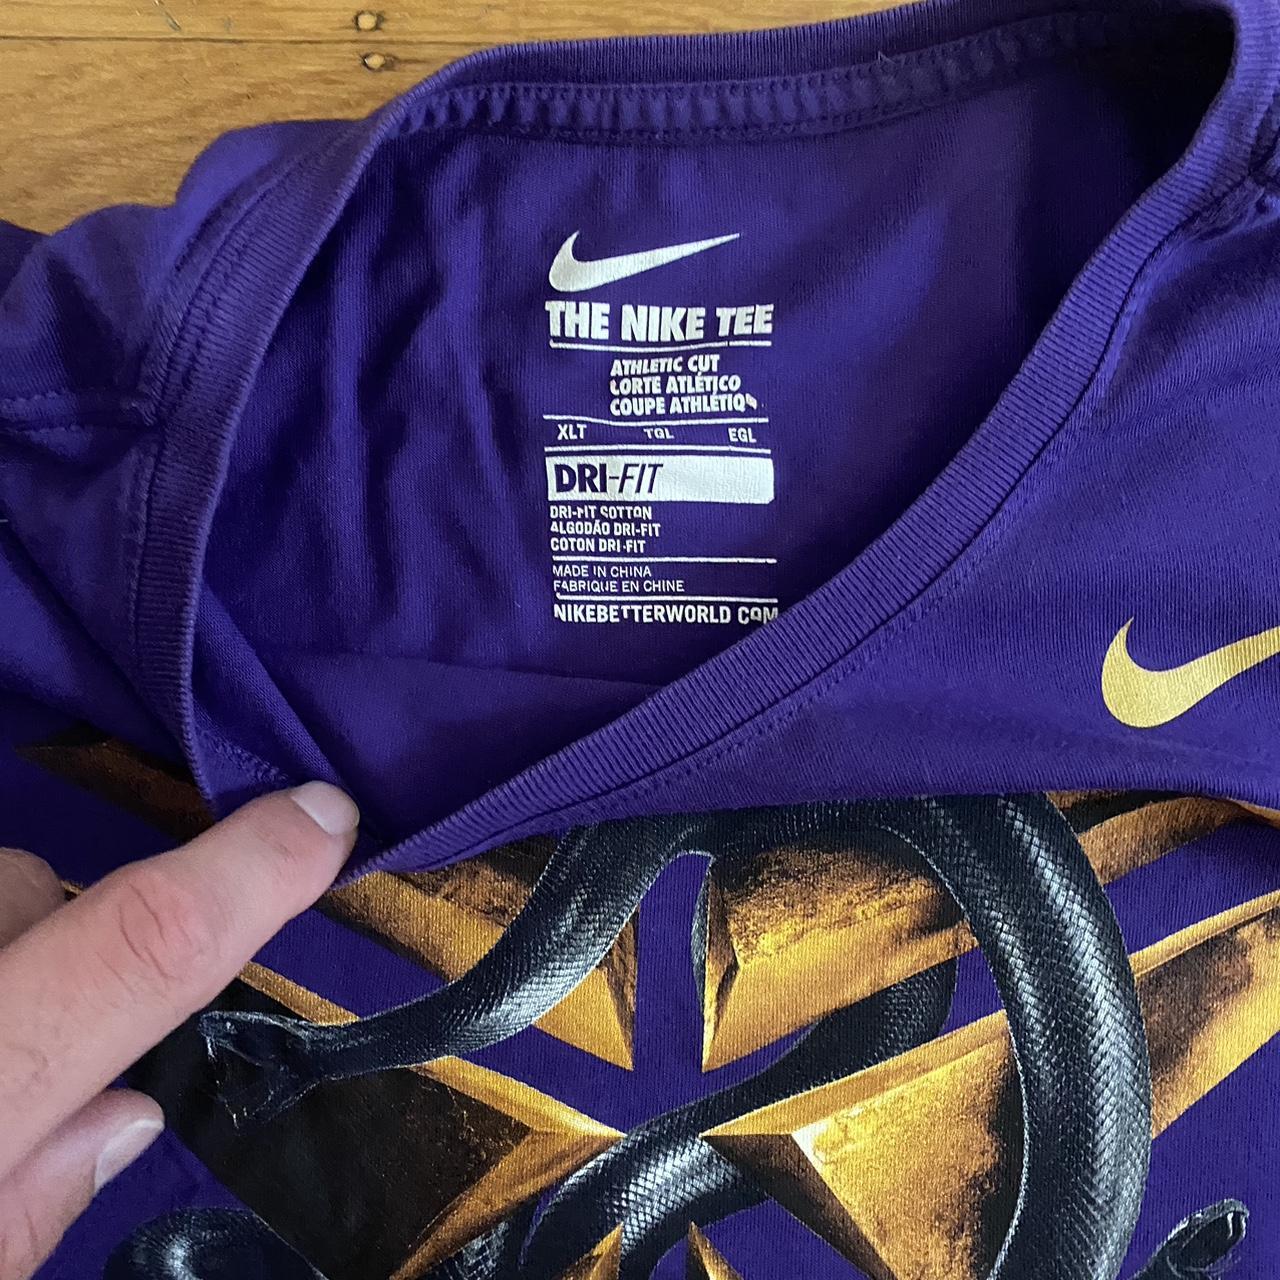 Nike Kobe Bryant t shirt Size L #nike #kobebryant - Depop